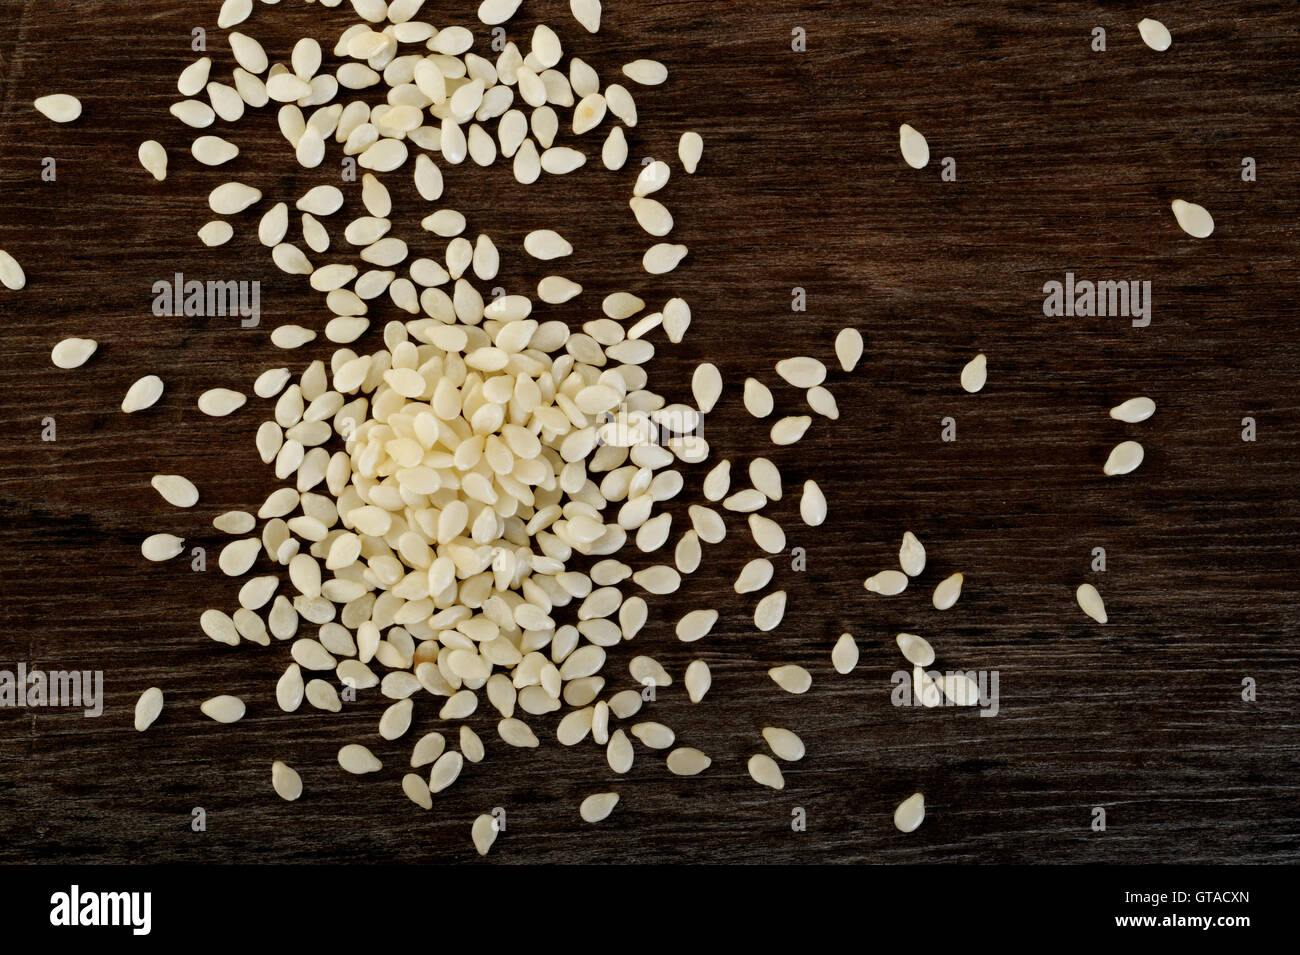 white sesame seeds Stock Photo